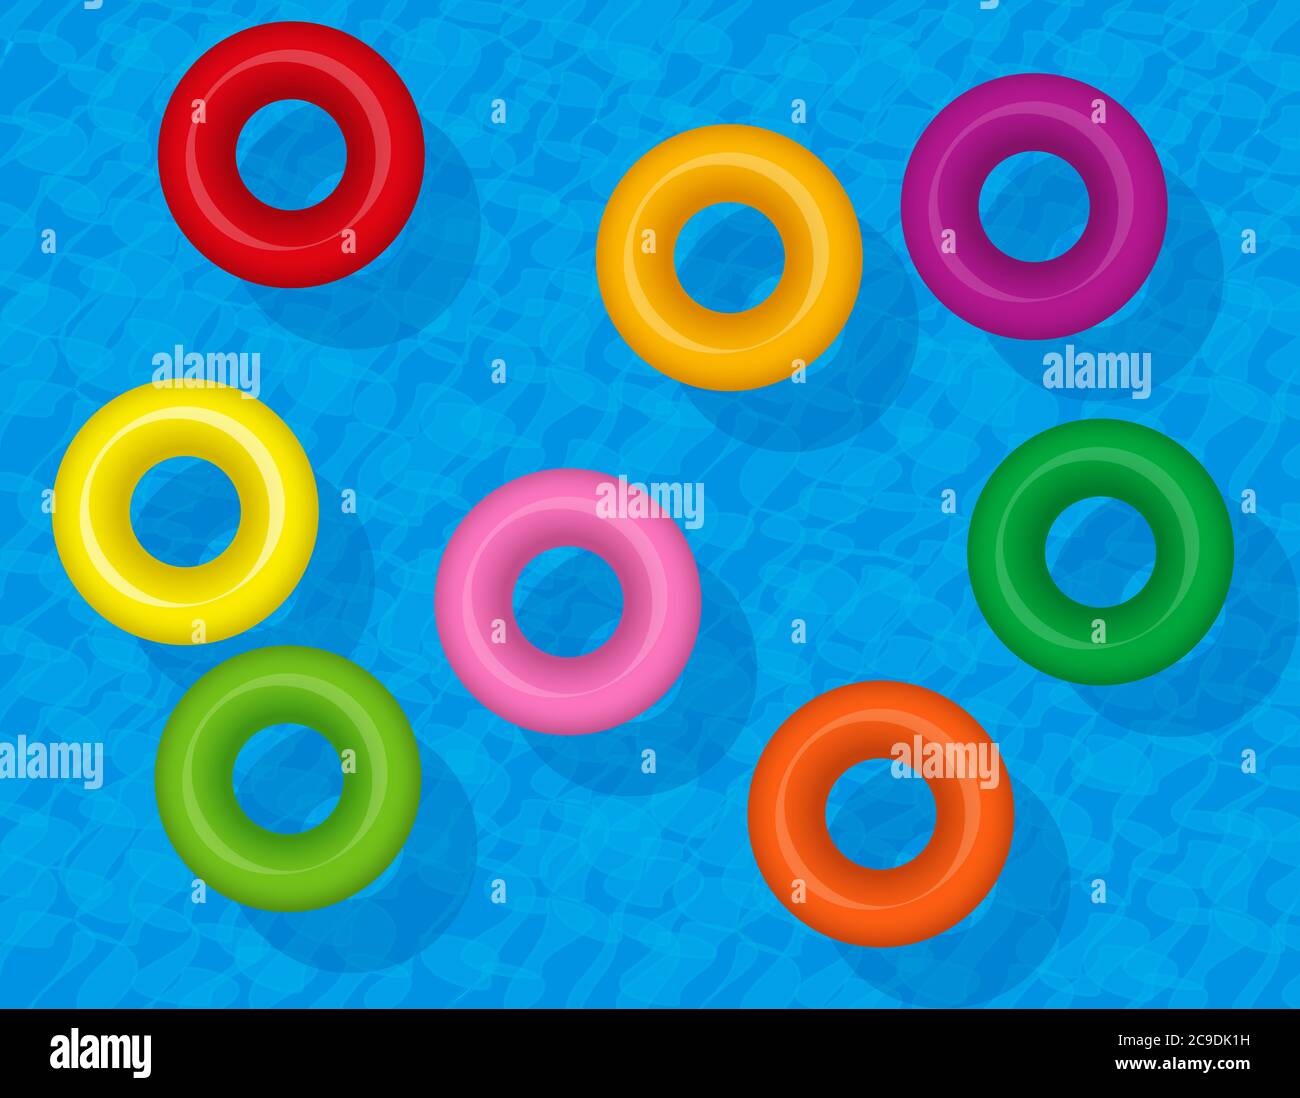 Schwimmringe, bunte aufblasbare Wasserschläuche, farbige Rettungsschwimmer. Set von schwimmenden Kunststoff-Donuts auf blauem Wasser, Symbol für Gruppenreisen Spaß. Stockfoto